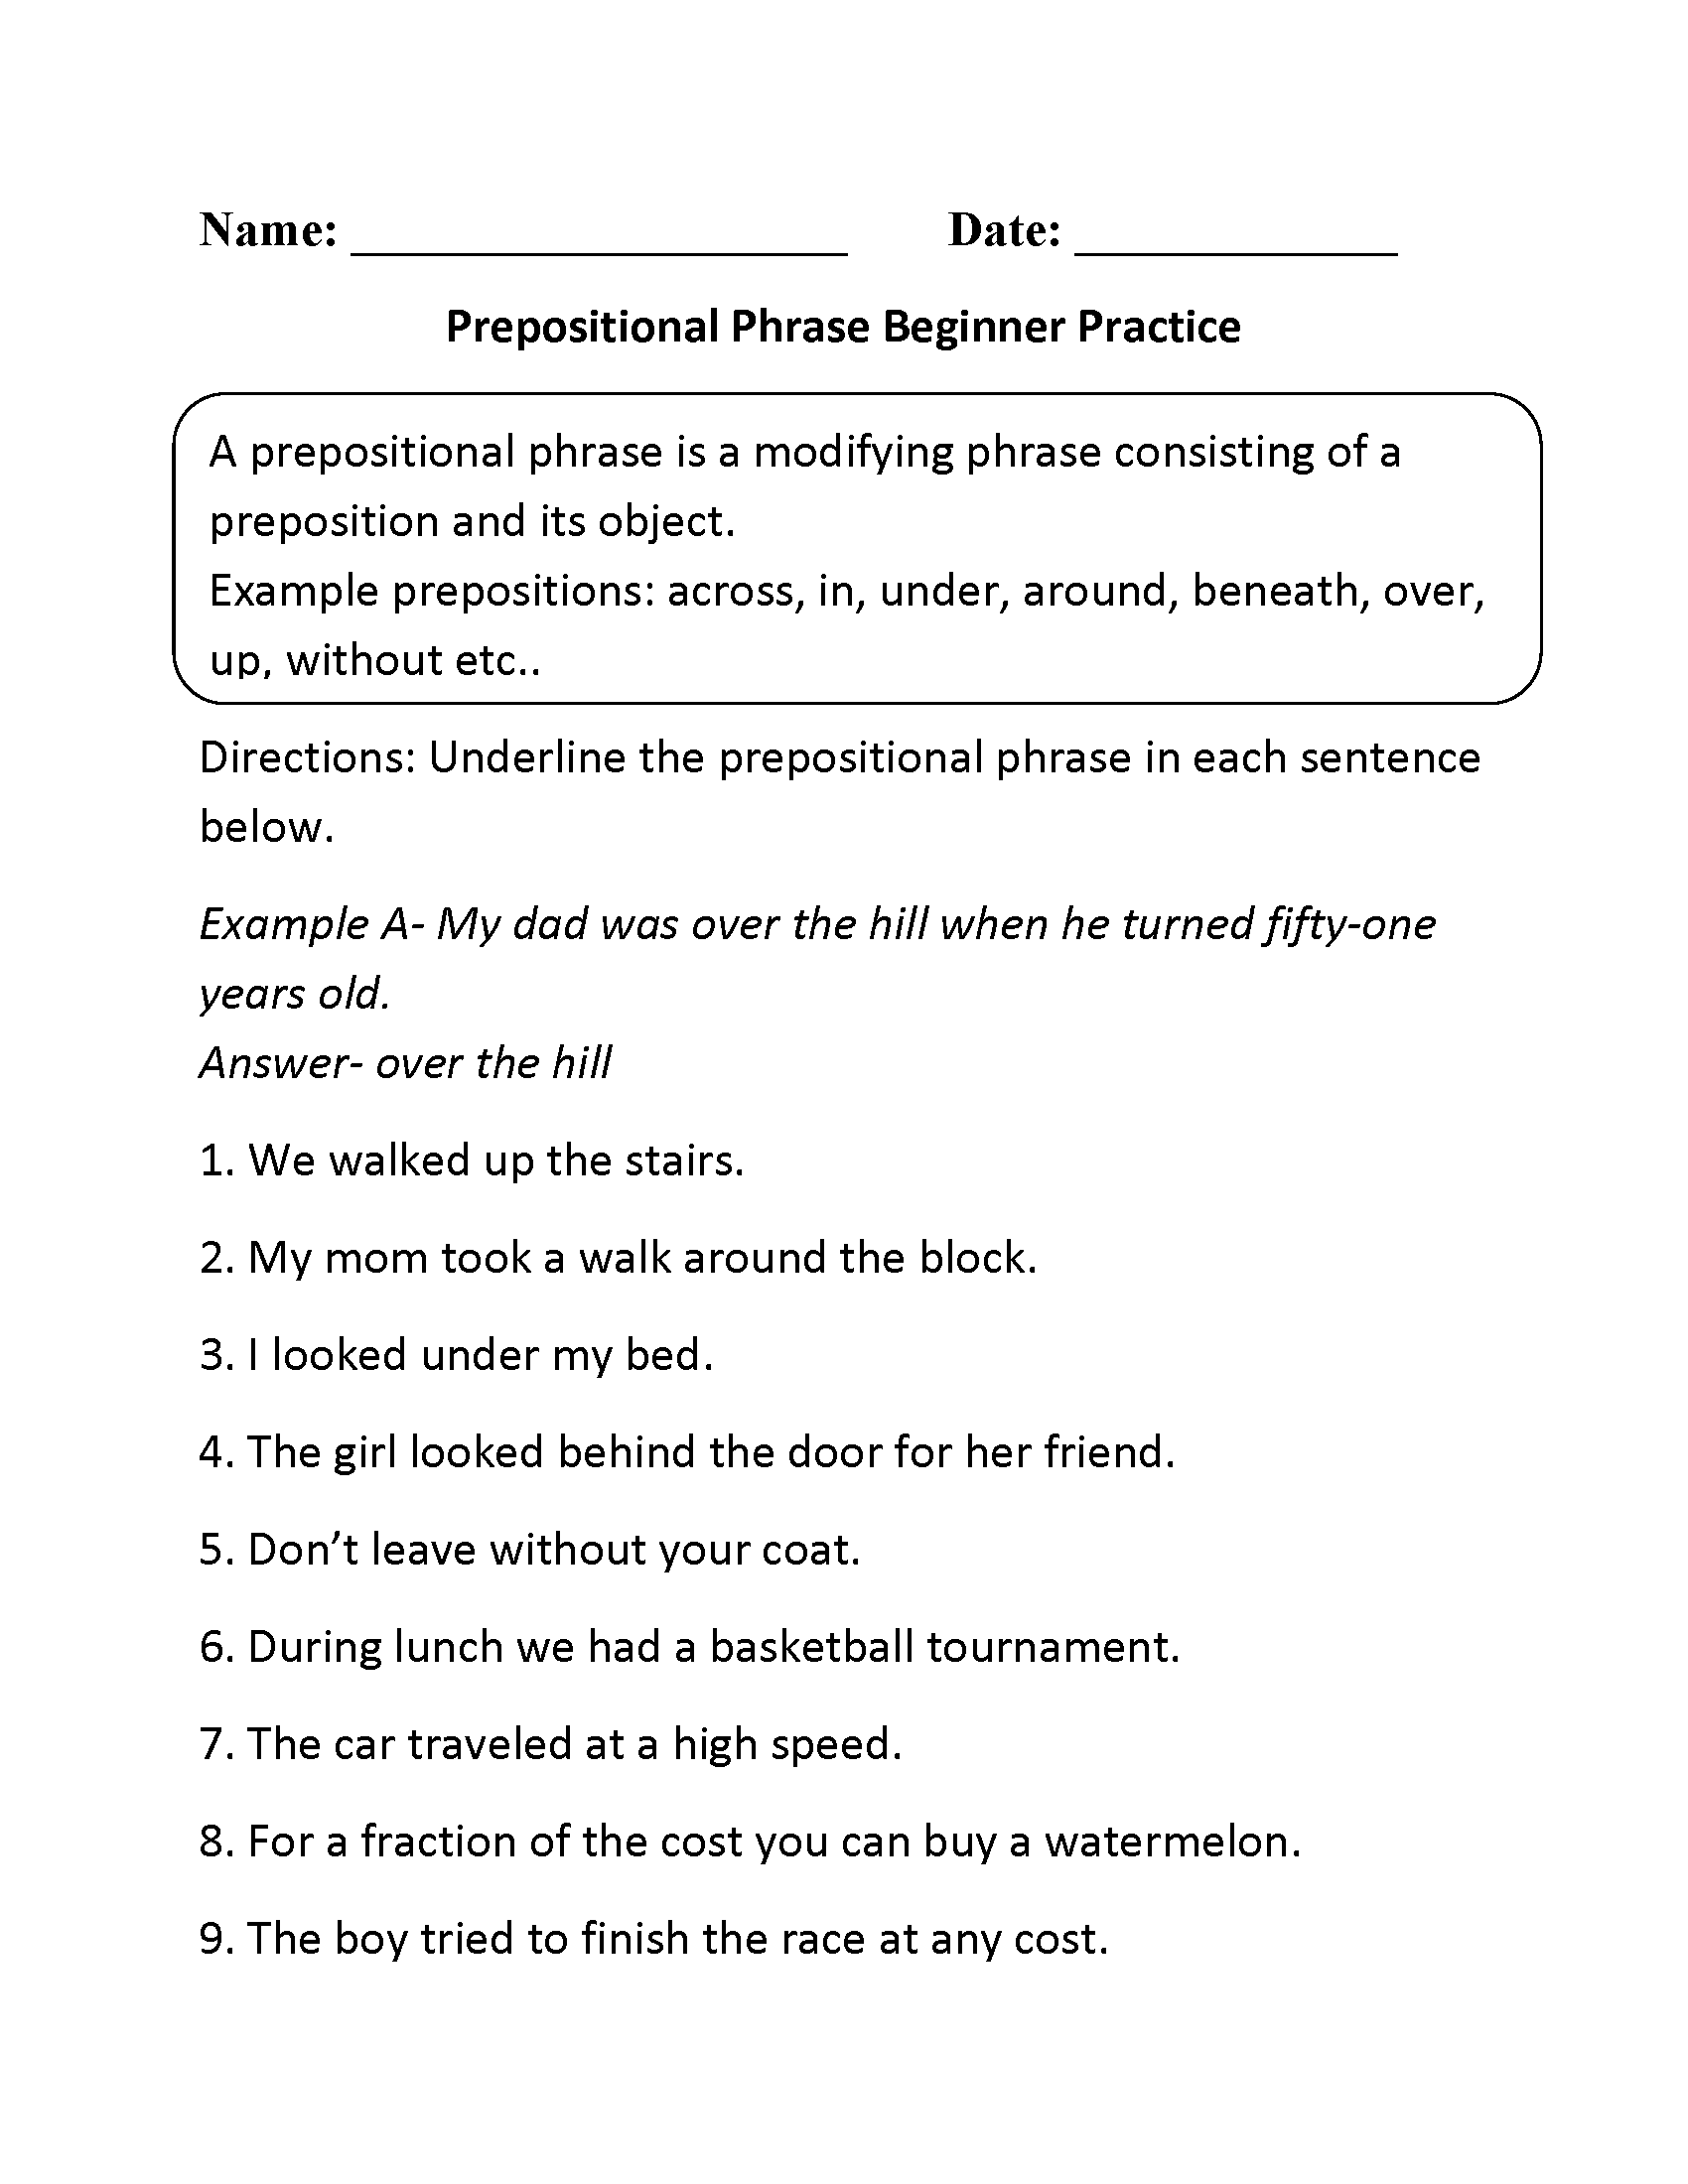 Prepostional Phrase Beginner Practice Worksheet